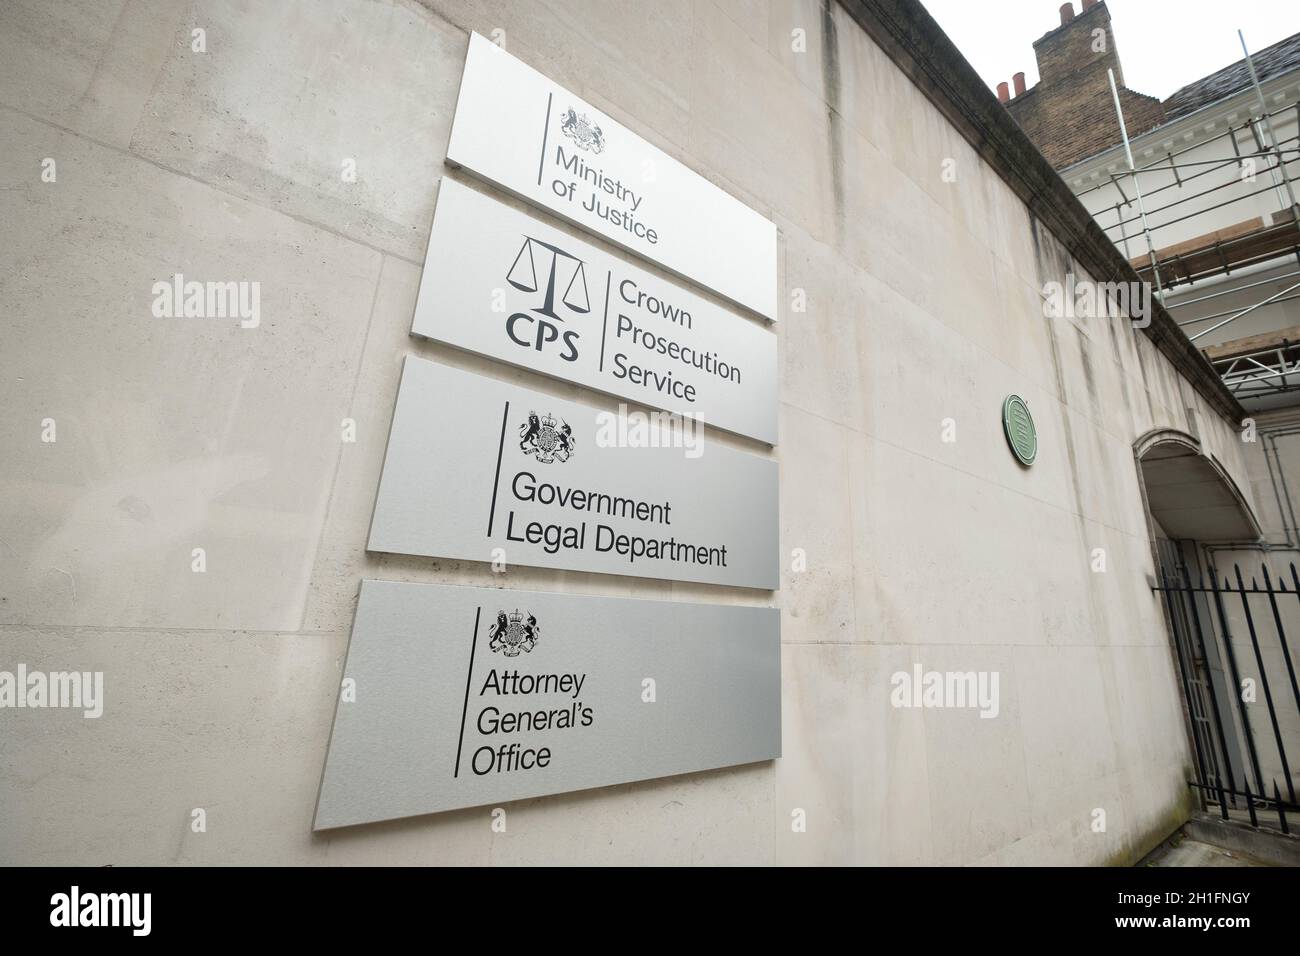 Westminster London – Justizministerium und Crown Prosecution Service, Rechtsabteilung der Regierung und Generalanwalt. Regierungsgebäude in Großbritannien Stockfoto